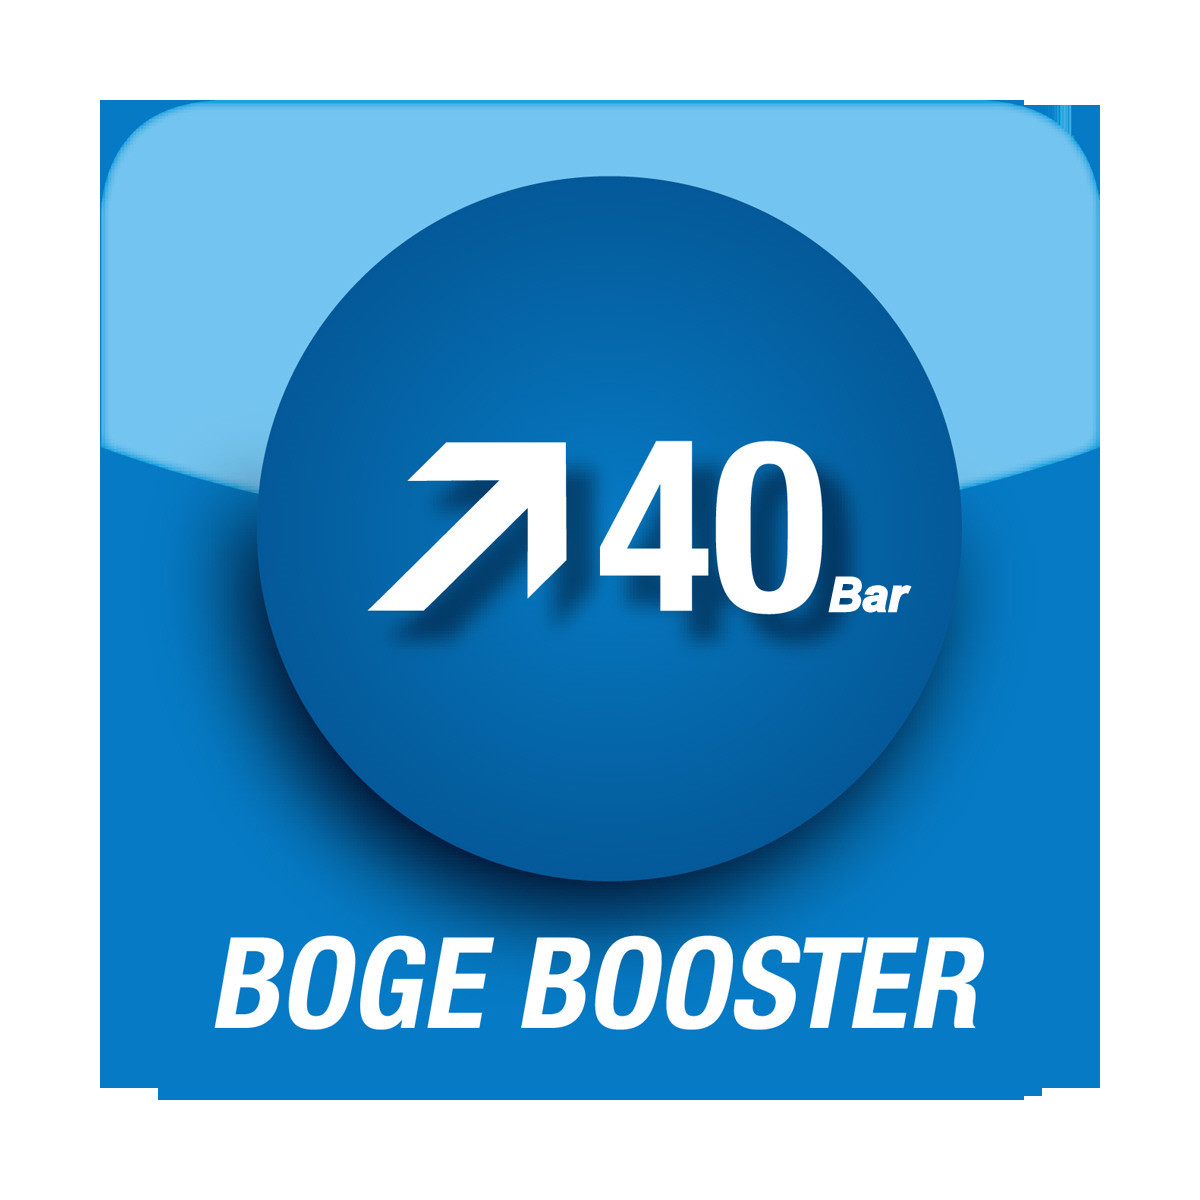 BOGE_BOOSTER_40 bar ARTECNO.JPG